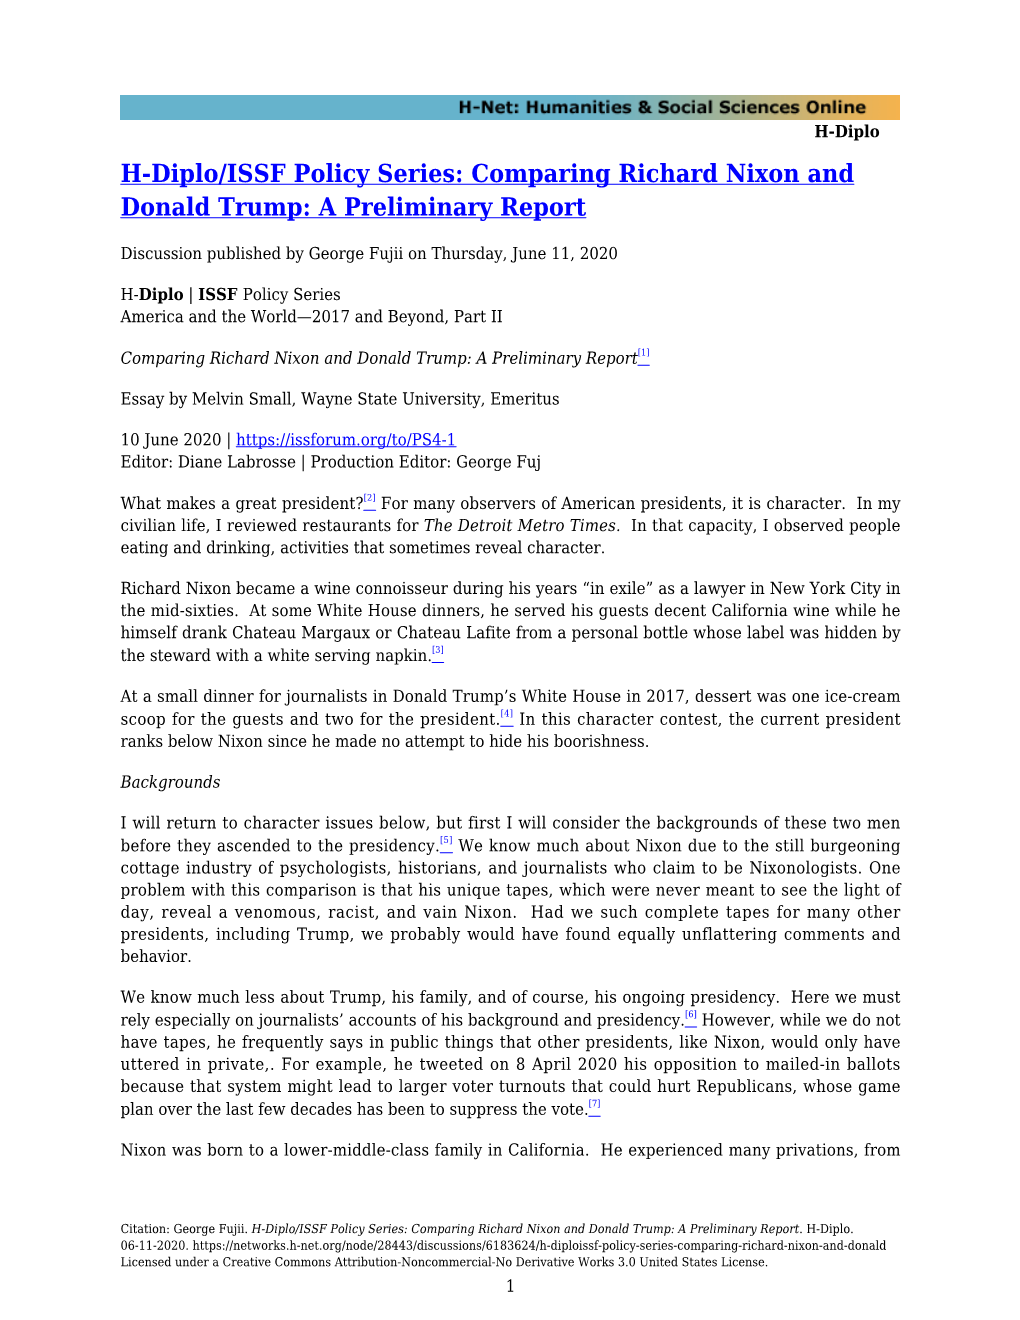 Comparing Richard Nixon and Donald Trump: a Preliminary Report